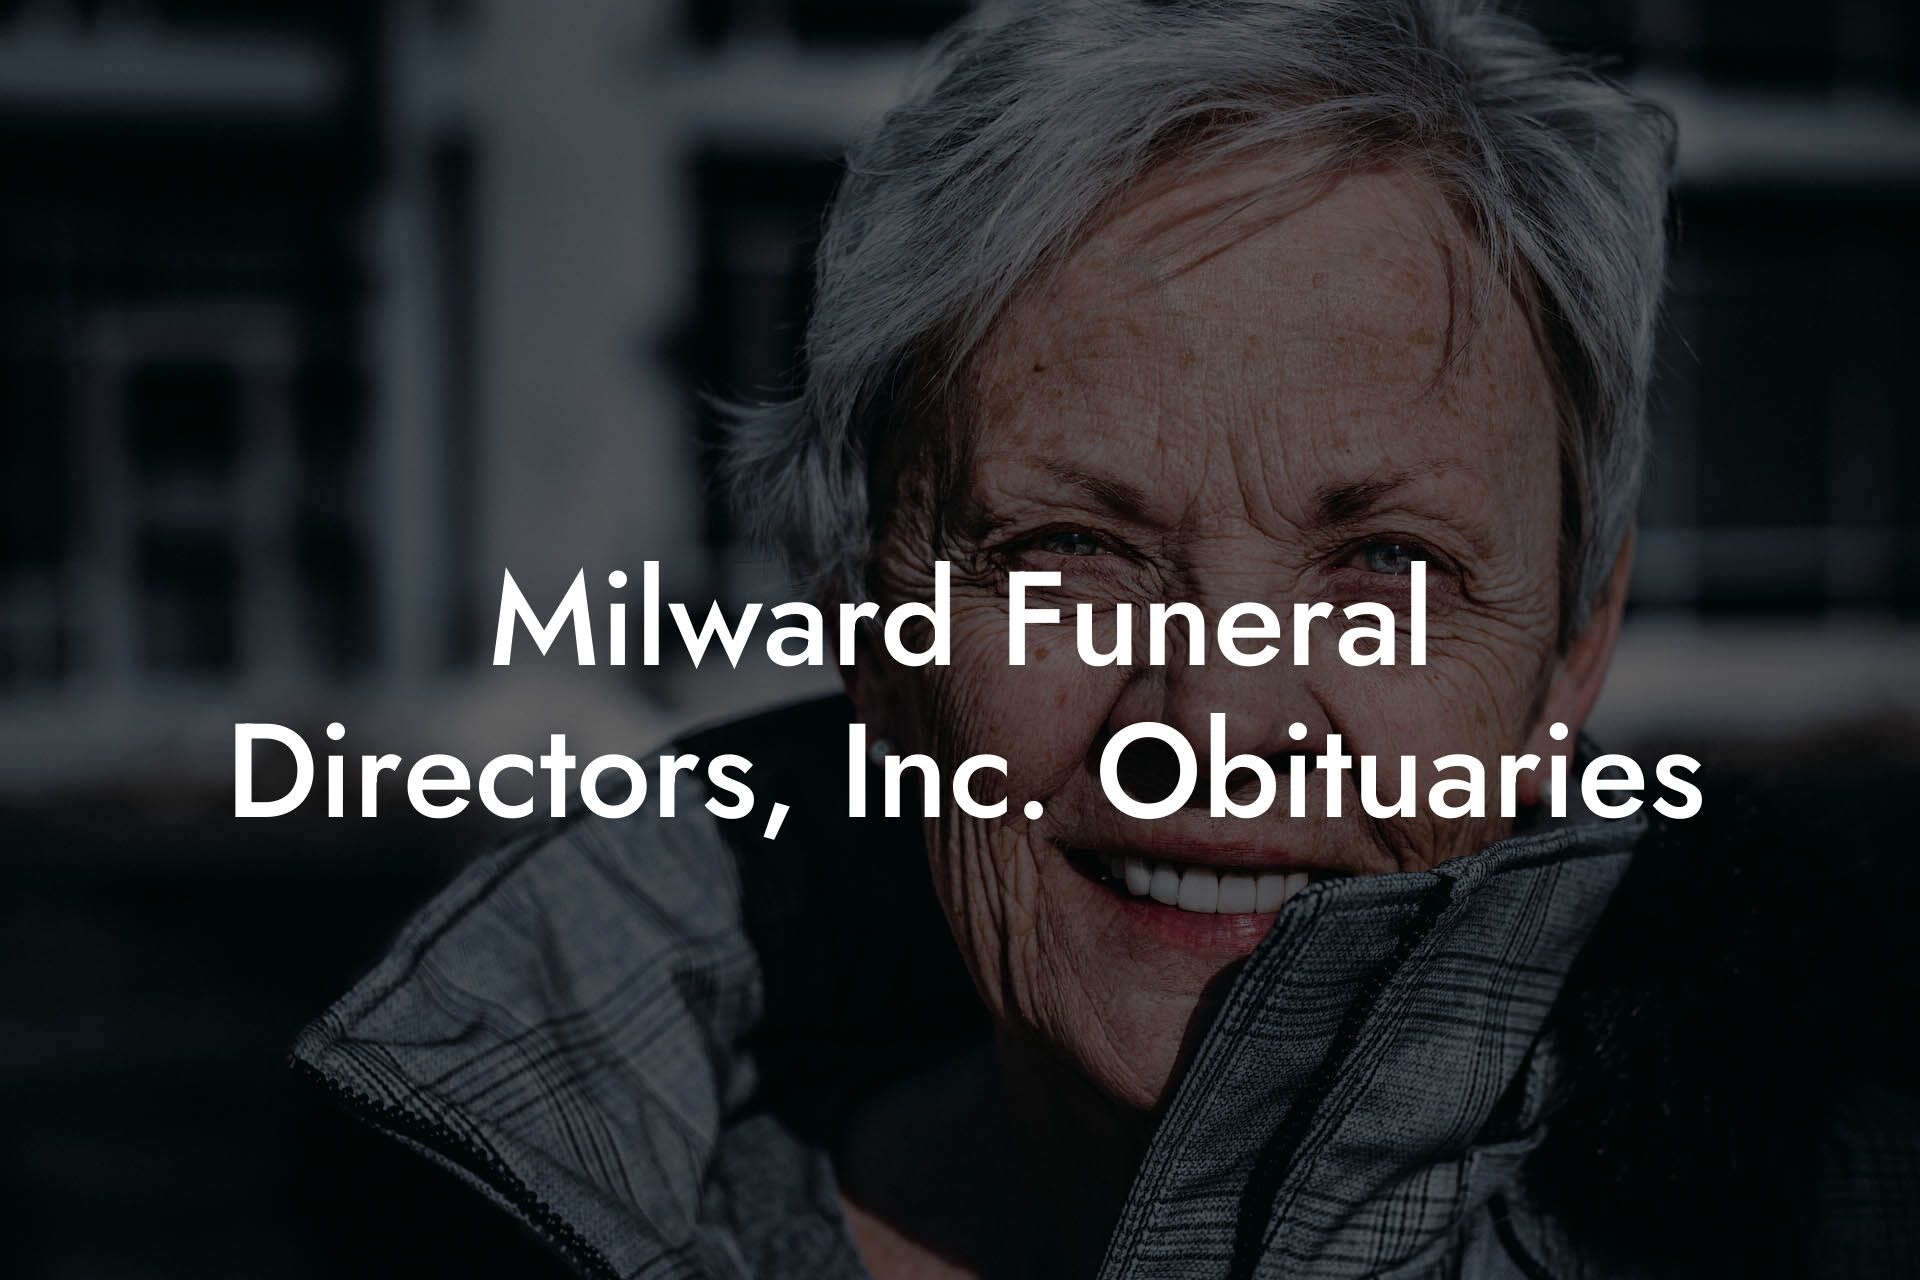 Milward Funeral Directors, Inc. Obituaries